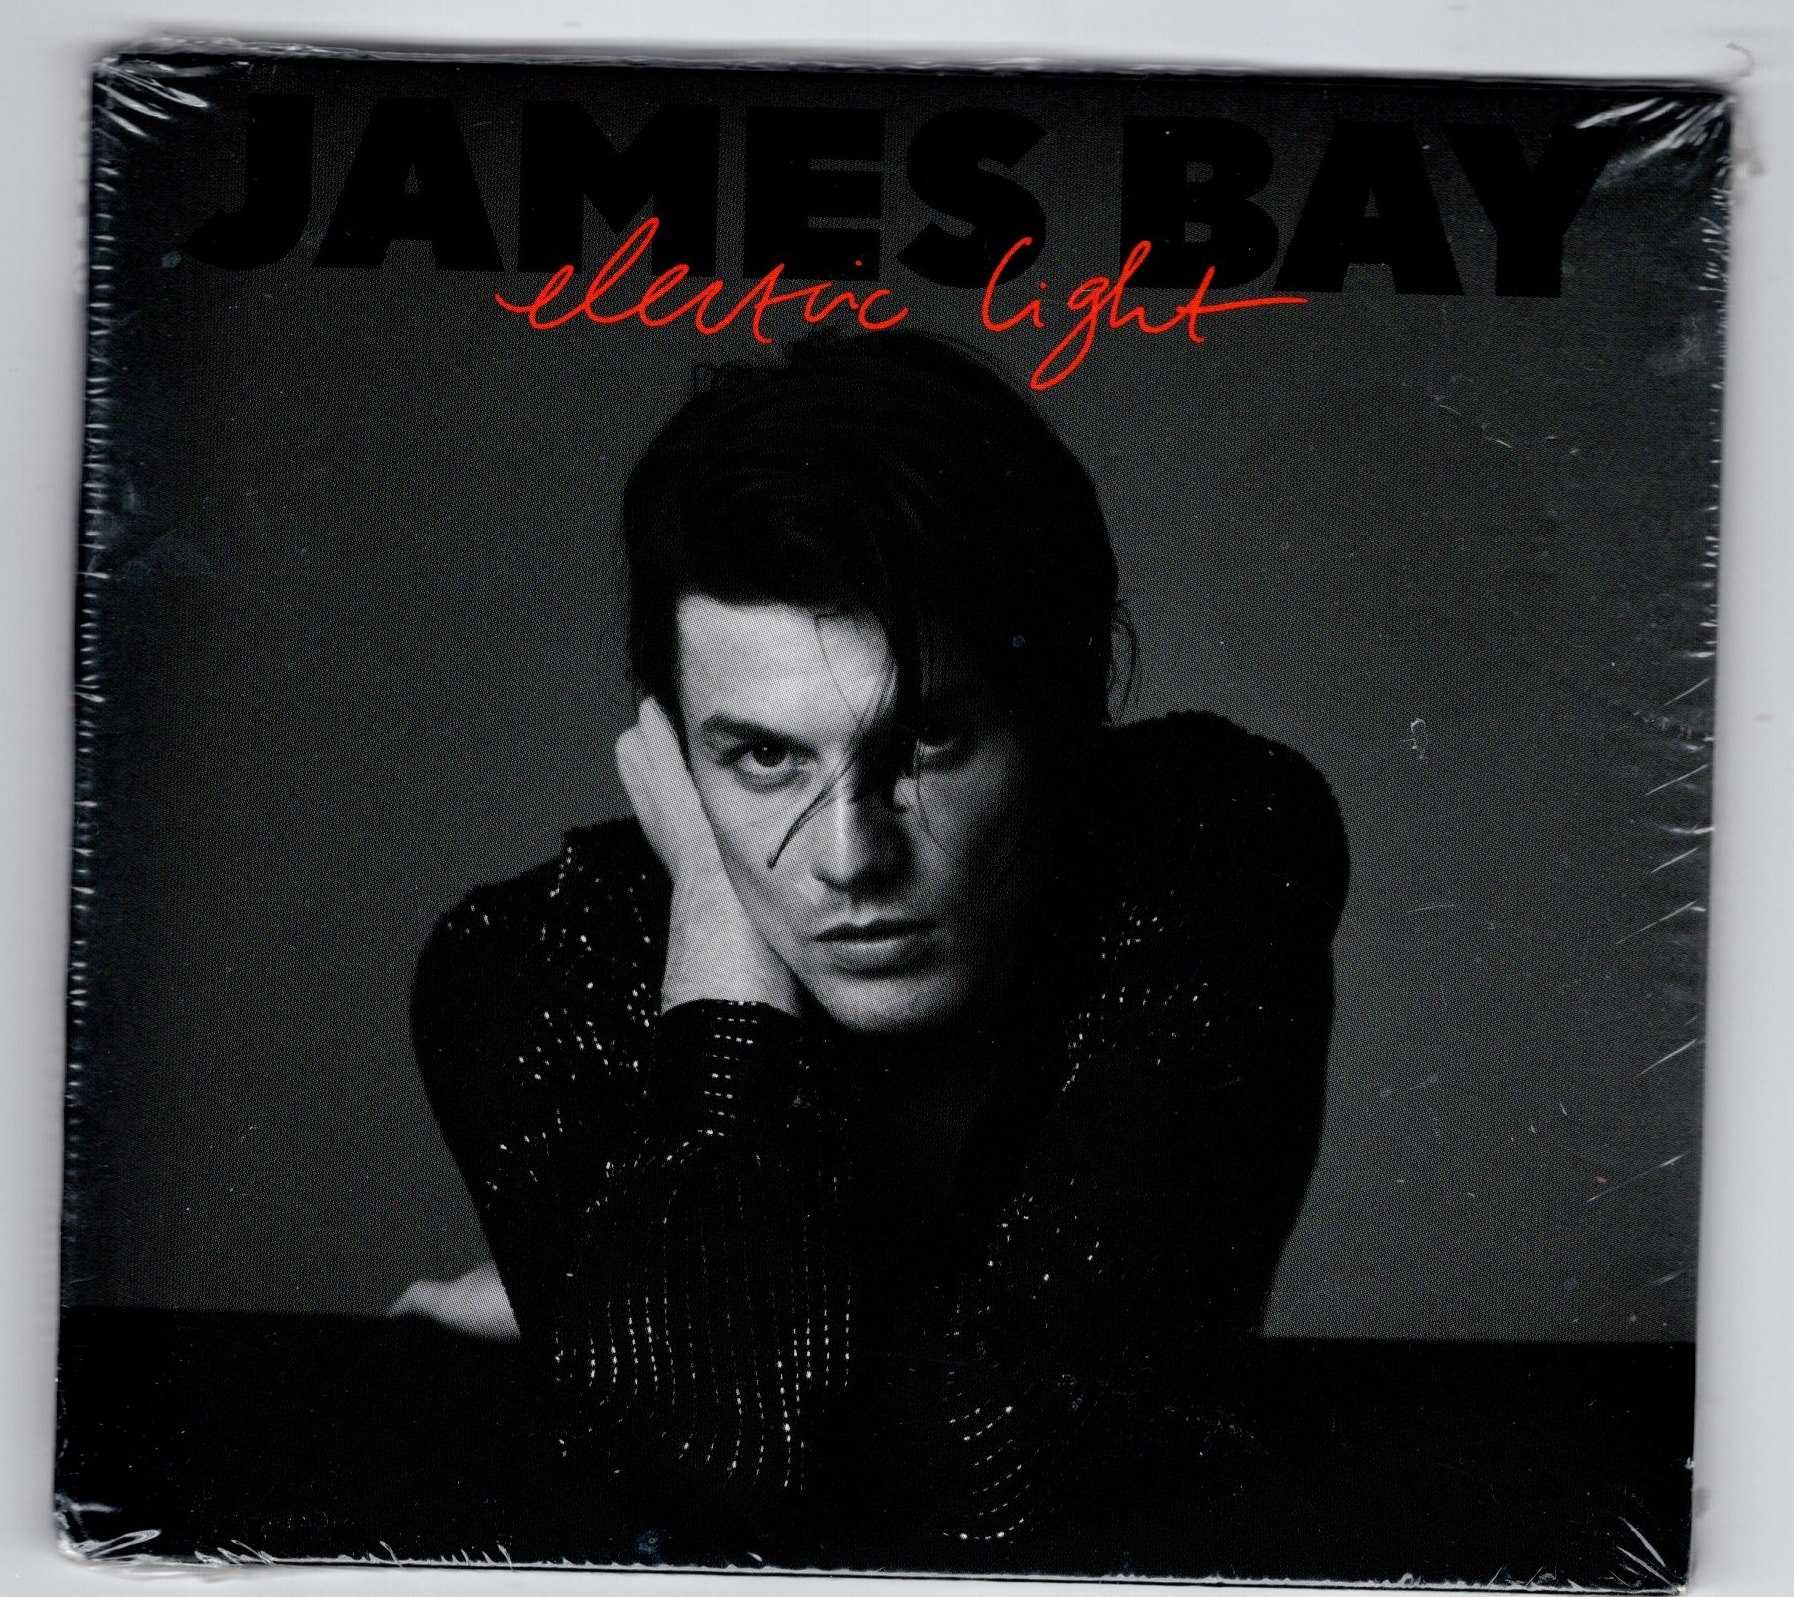 James Bay - Electric Light (Polska cena) (CD)